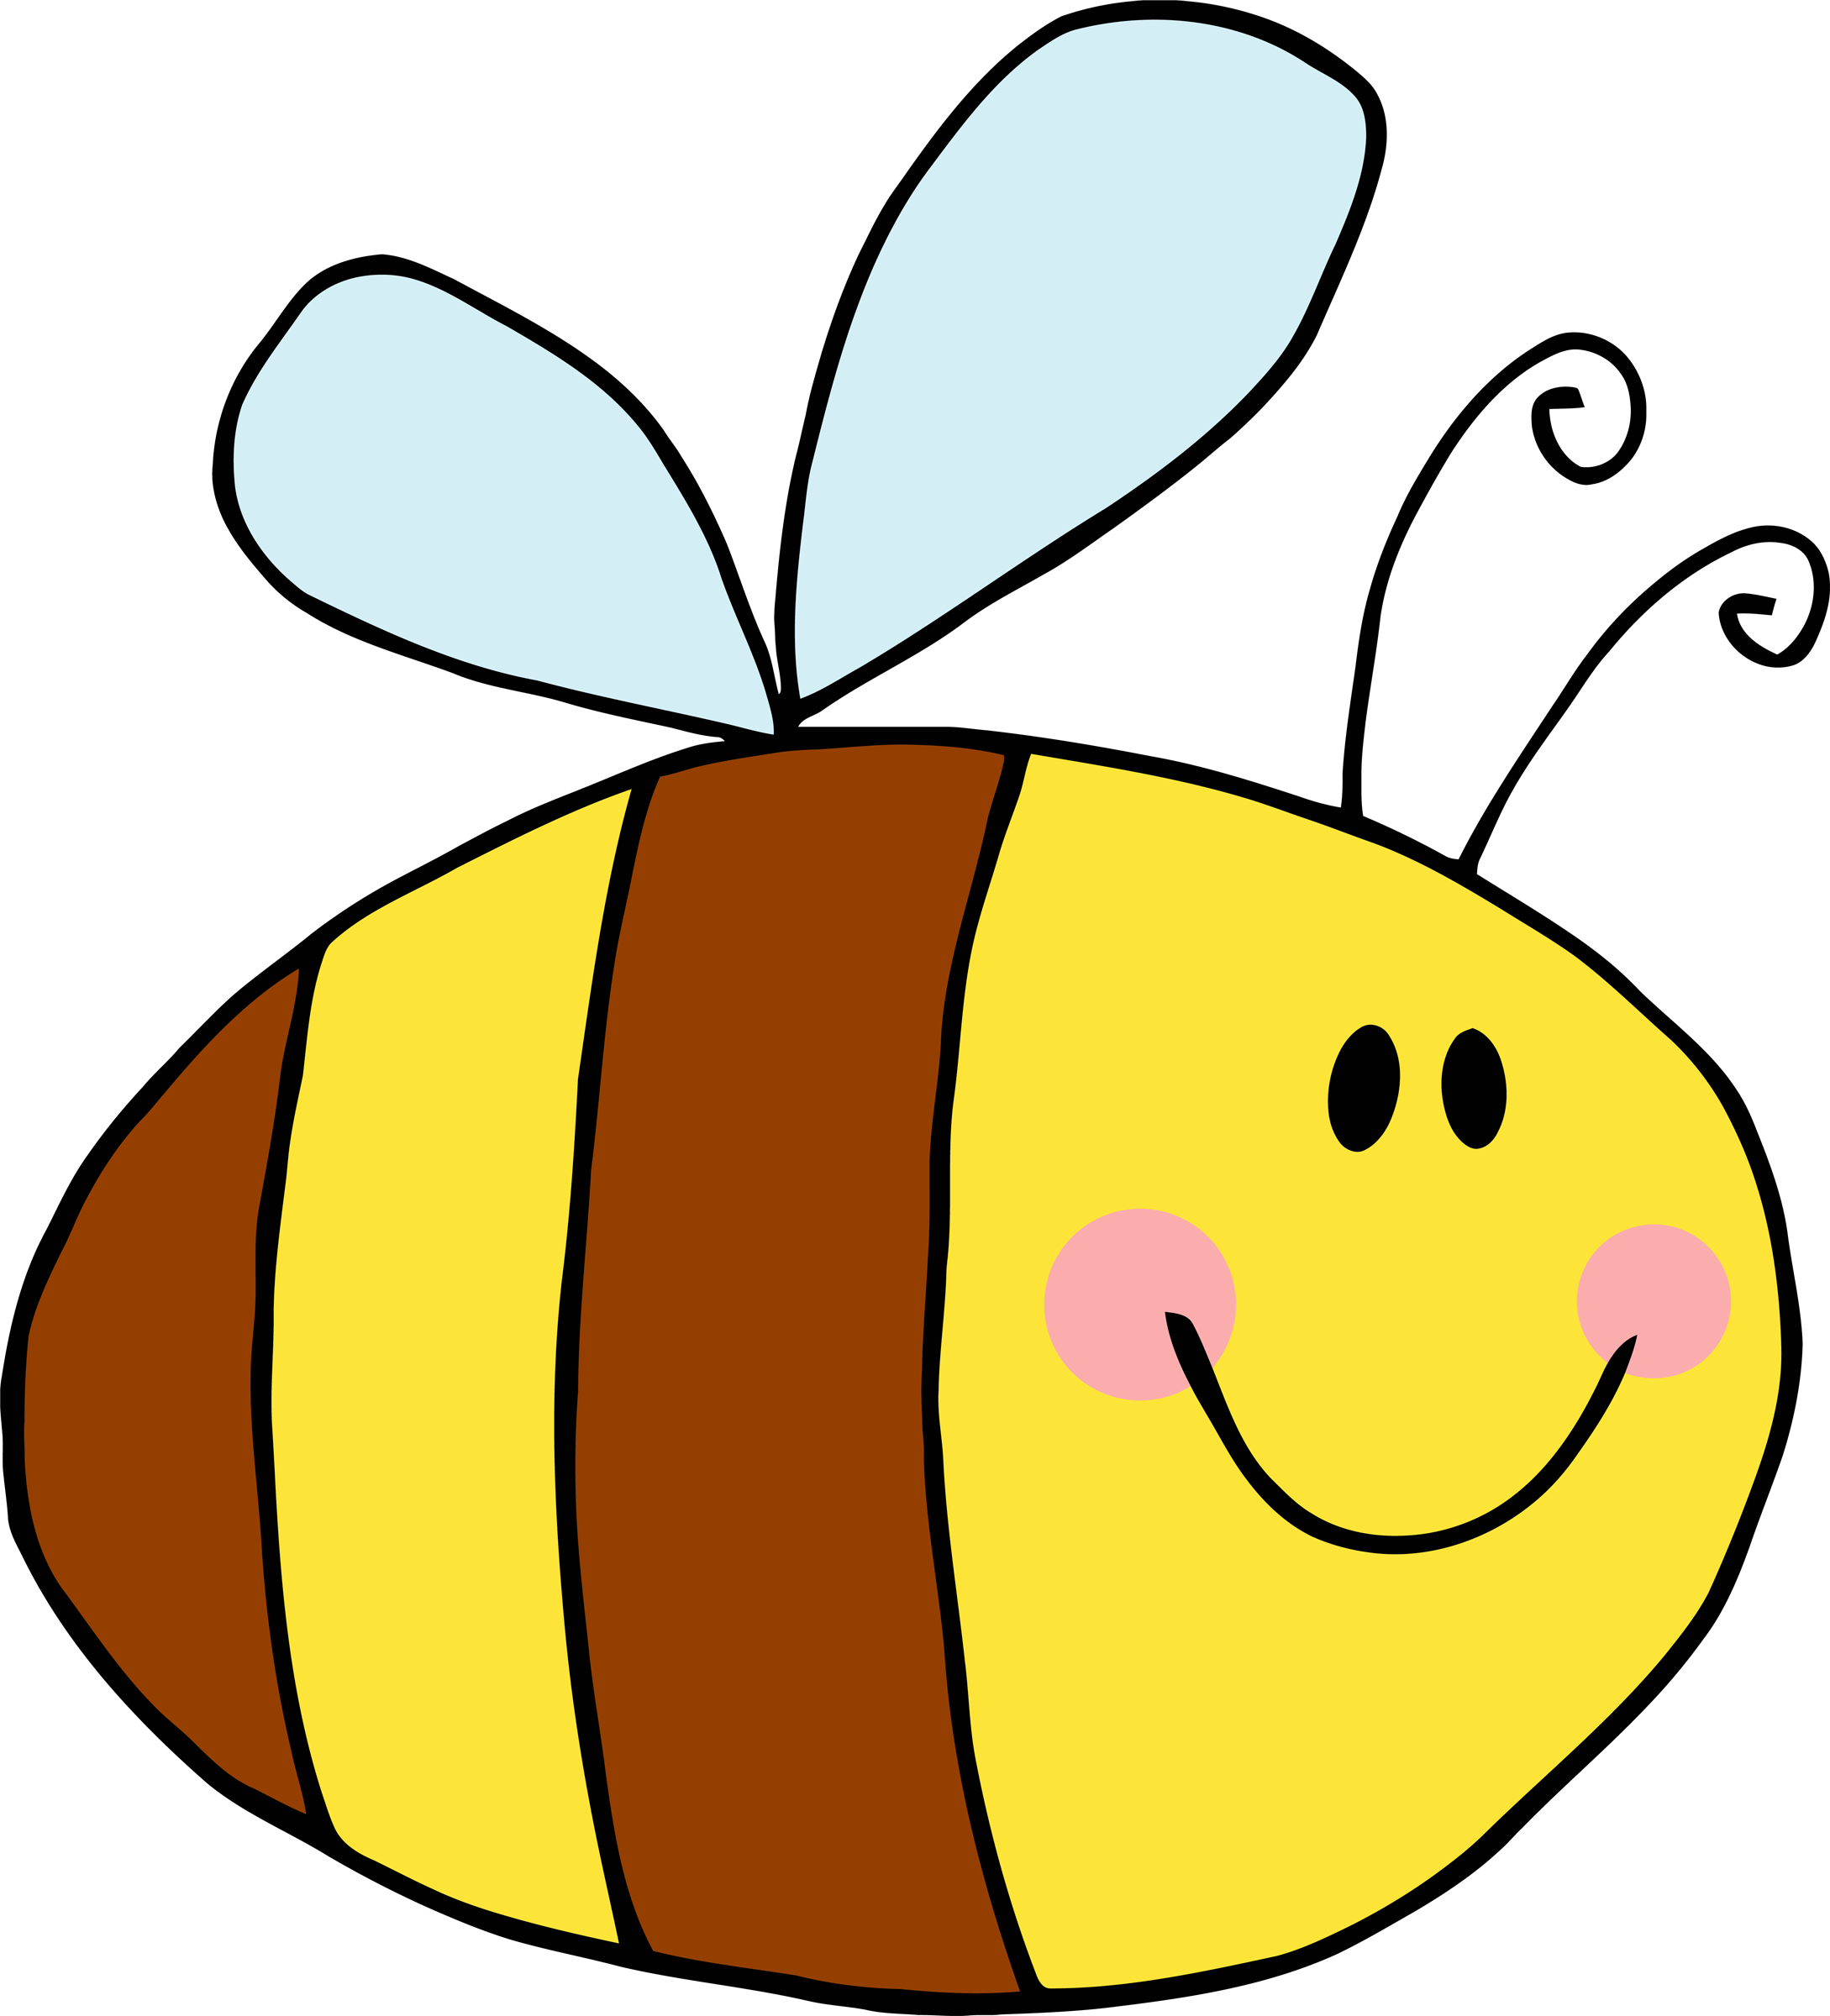 Cartoon Bees - ClipArt Best